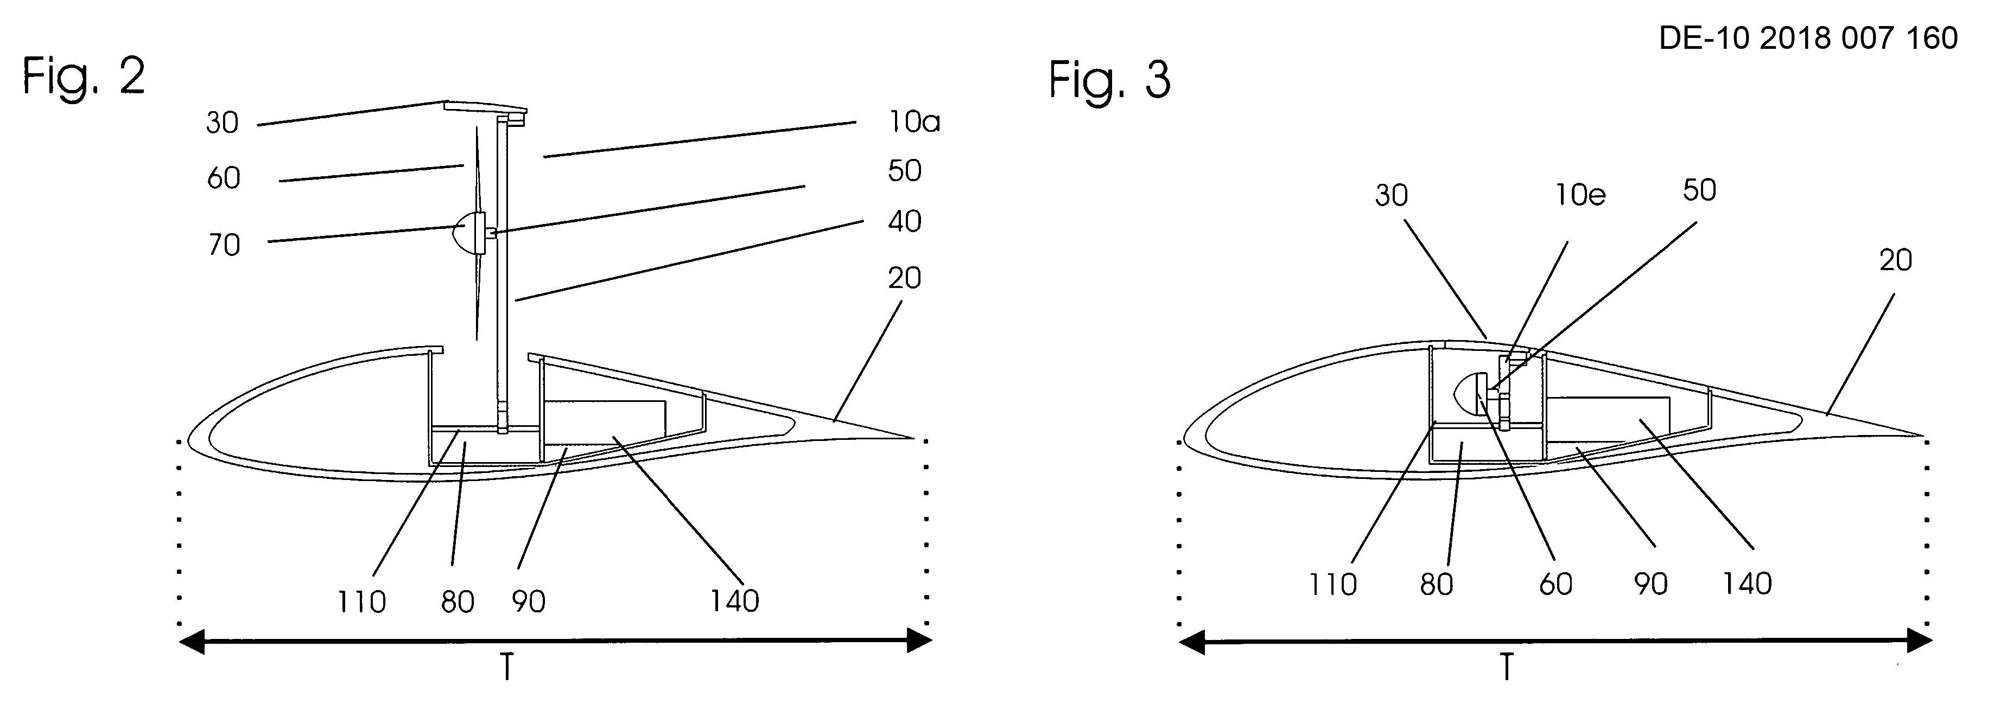 Zeichnung  Fig. 2 und Fig. 3der Patentanmeldung DE-10-2018-007-160 zur Propeller-Schubklappe